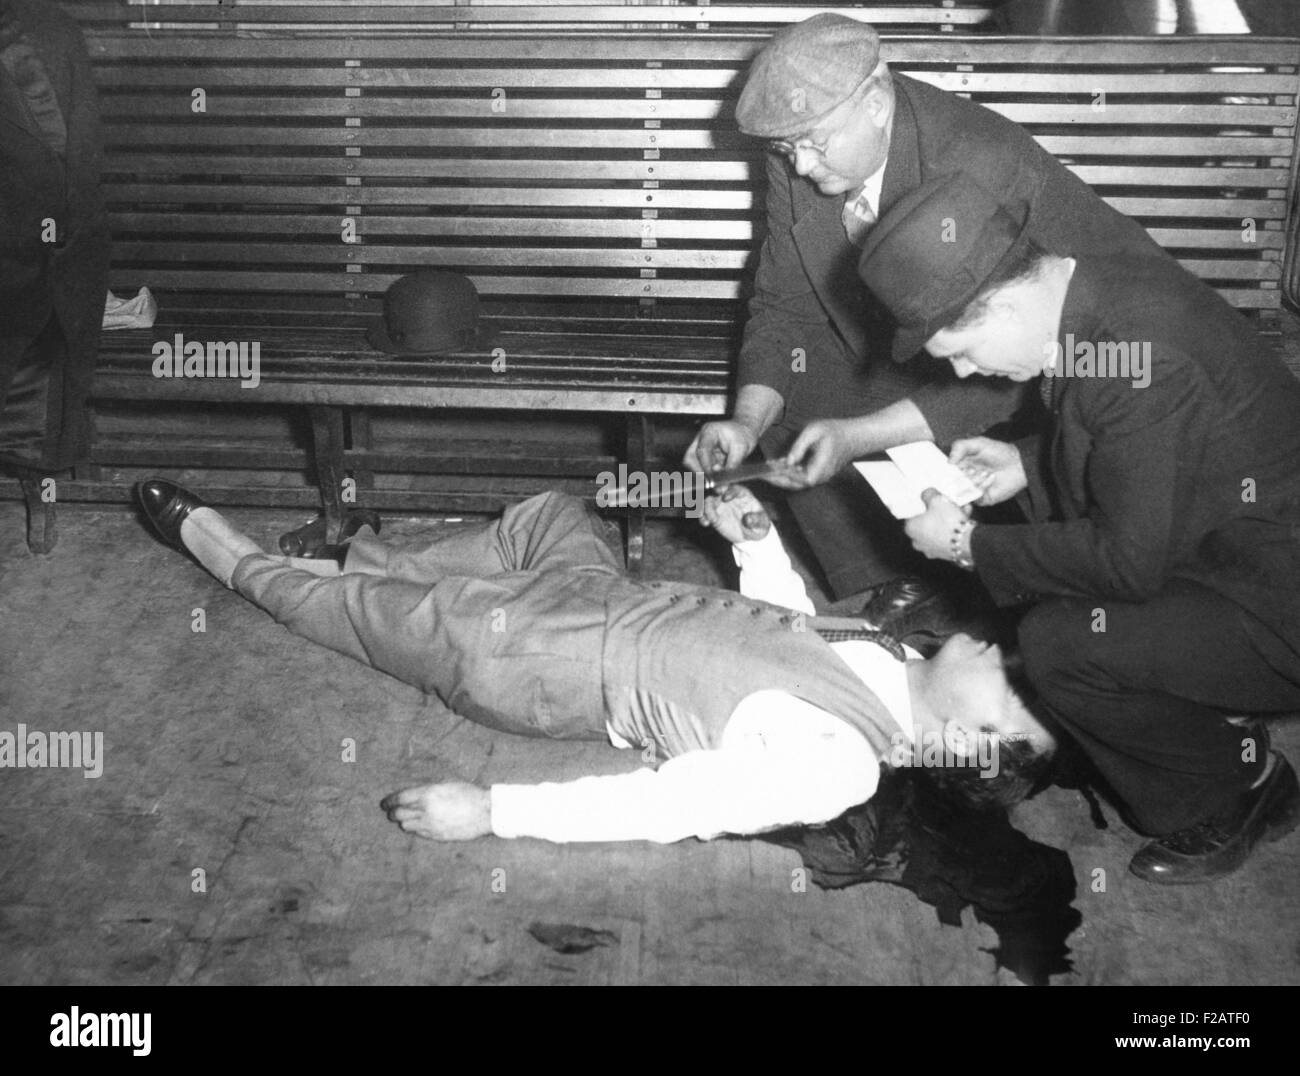 Gangster Jack McGurn liegen tot in einer Bowlingbahn Chicago, 15. Februar 1936. Er wurde von drei bewaffneten Männern am siebten Jahrestag des St. Valentines Day Massacre getötet. Die Mörder warf eine Valentinstag-Karte in der Nähe seines Körpers. Er hatte für das Massaker angeklagt worden, aber wurde nie vor Gericht gestellt. McGurn wurde gespielt von Clint Ritchie in 1967 Film ST. Valentines DAY MASSACRE und Carmen Argenziano 1975 in CAPONE. (CSU 2015 11 1668) Stockfoto